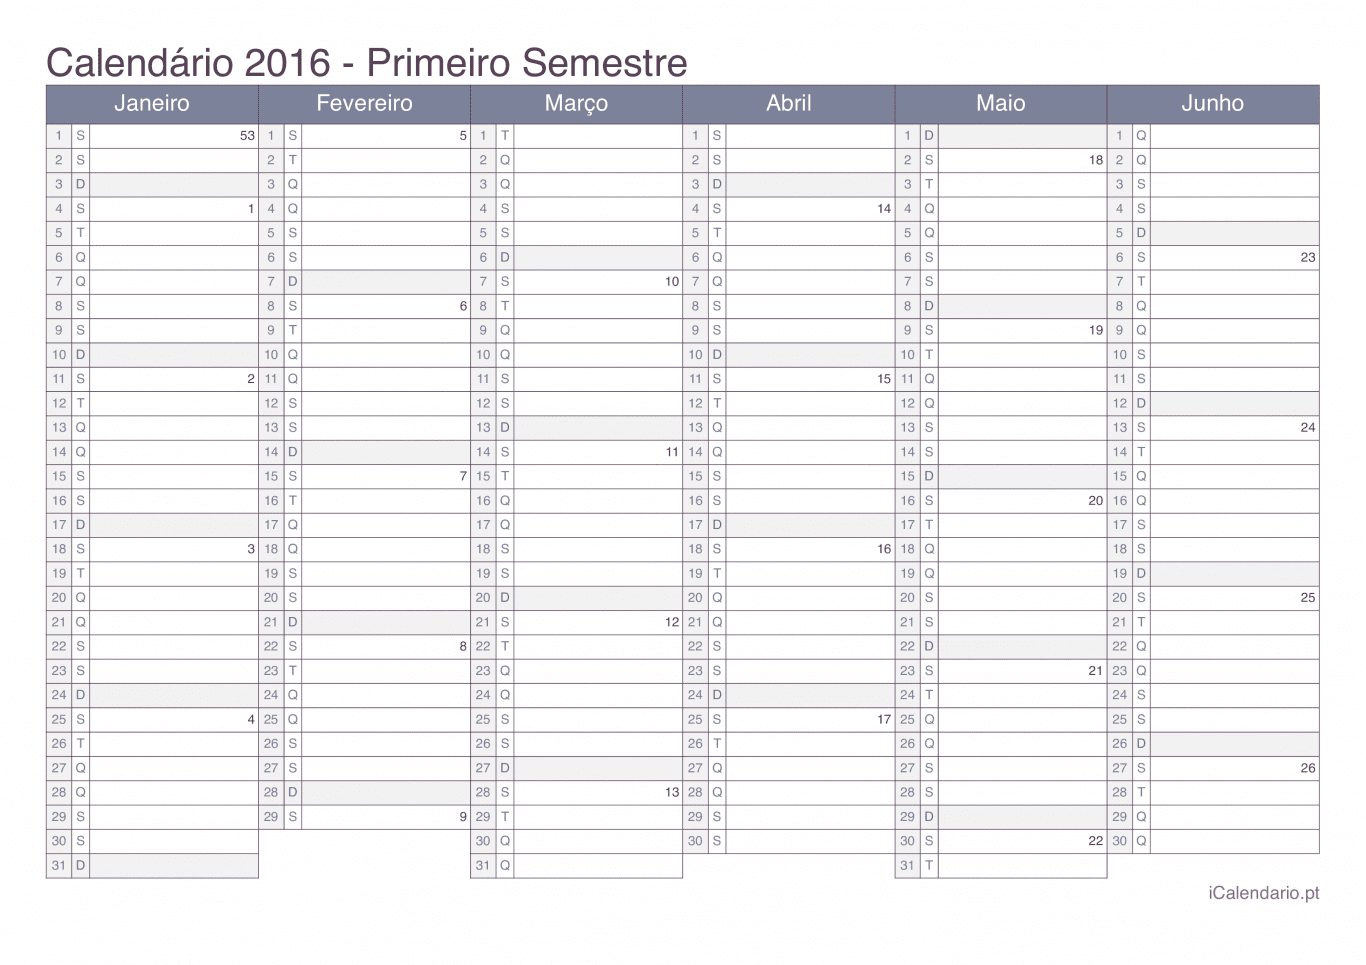 Calendário por semestre com números da semana 2016 - Office